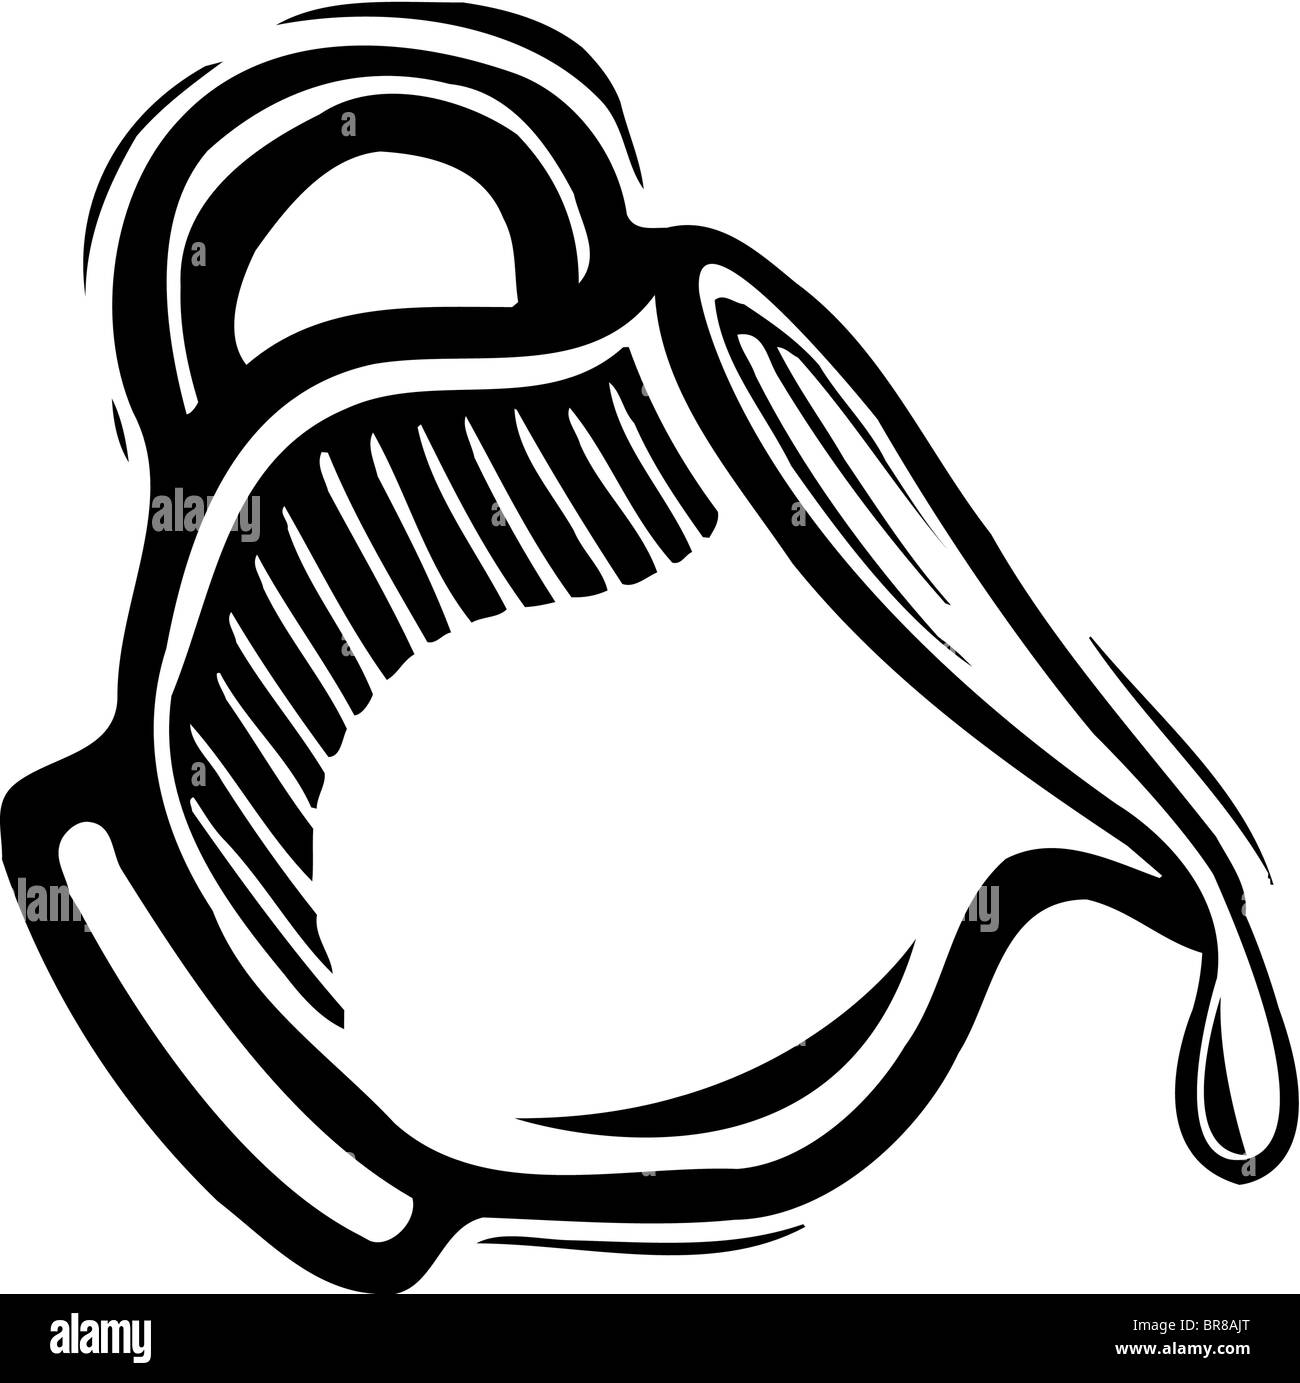 Un dessin d'un pot de crème en noir et blanc Banque D'Images